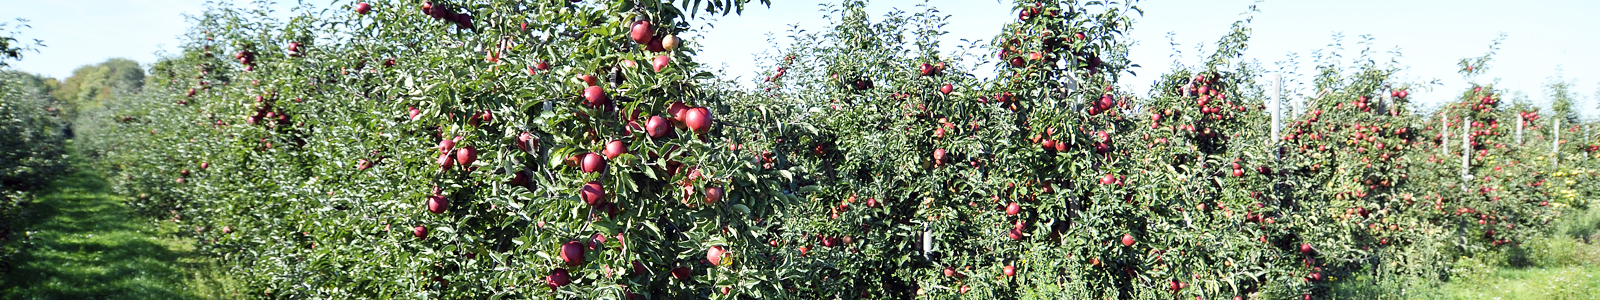 Obstbaumanlage mit reifen roten Äpfeln ©Feuerbach